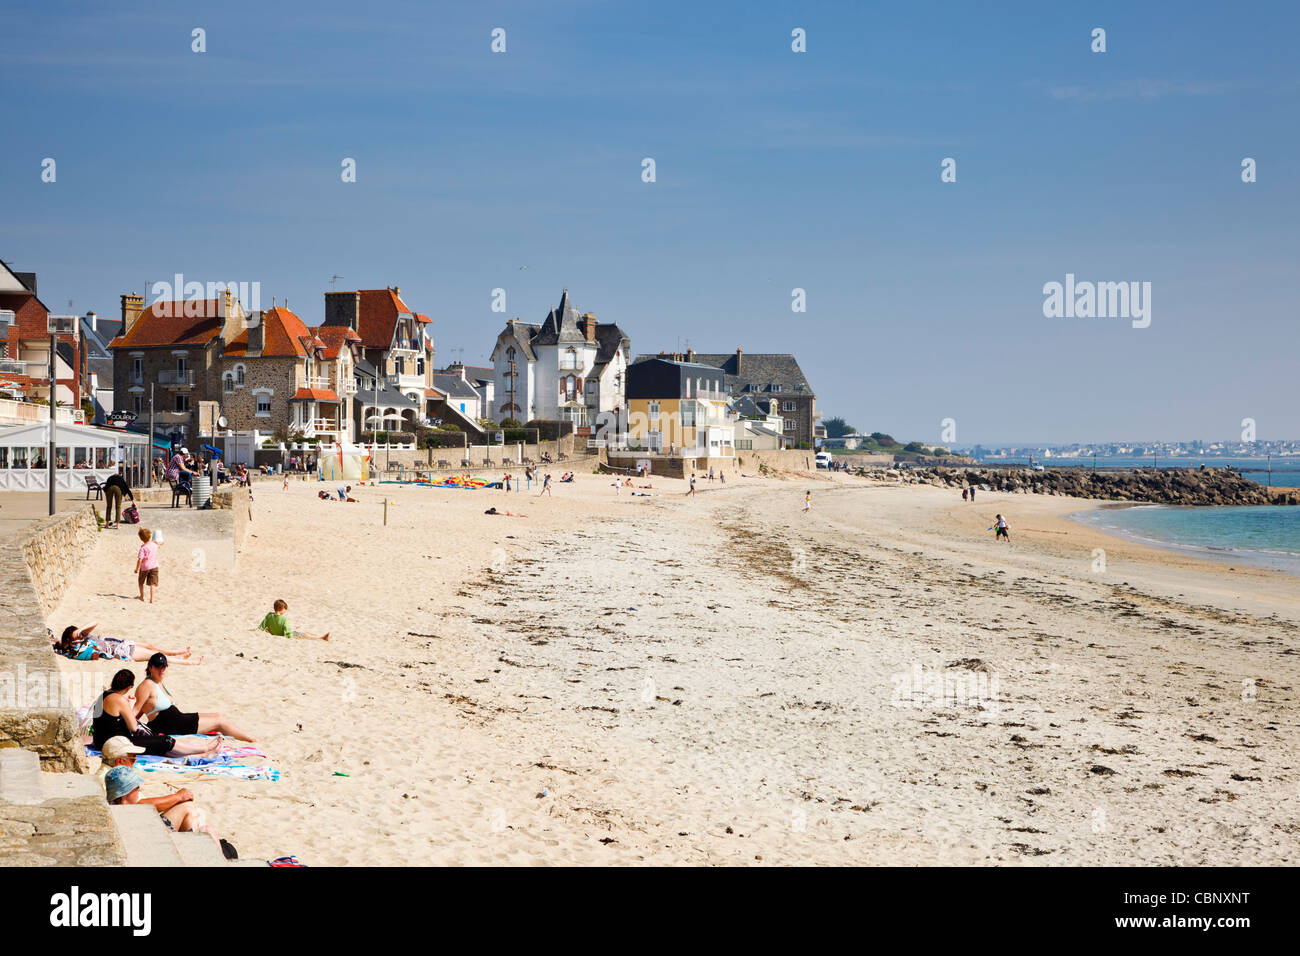 Lamor Plage spiaggia, sulla costa del Morbihan, in Bretagna, in Francia con la gente a prendere il sole sulla spiaggia in estate Foto Stock